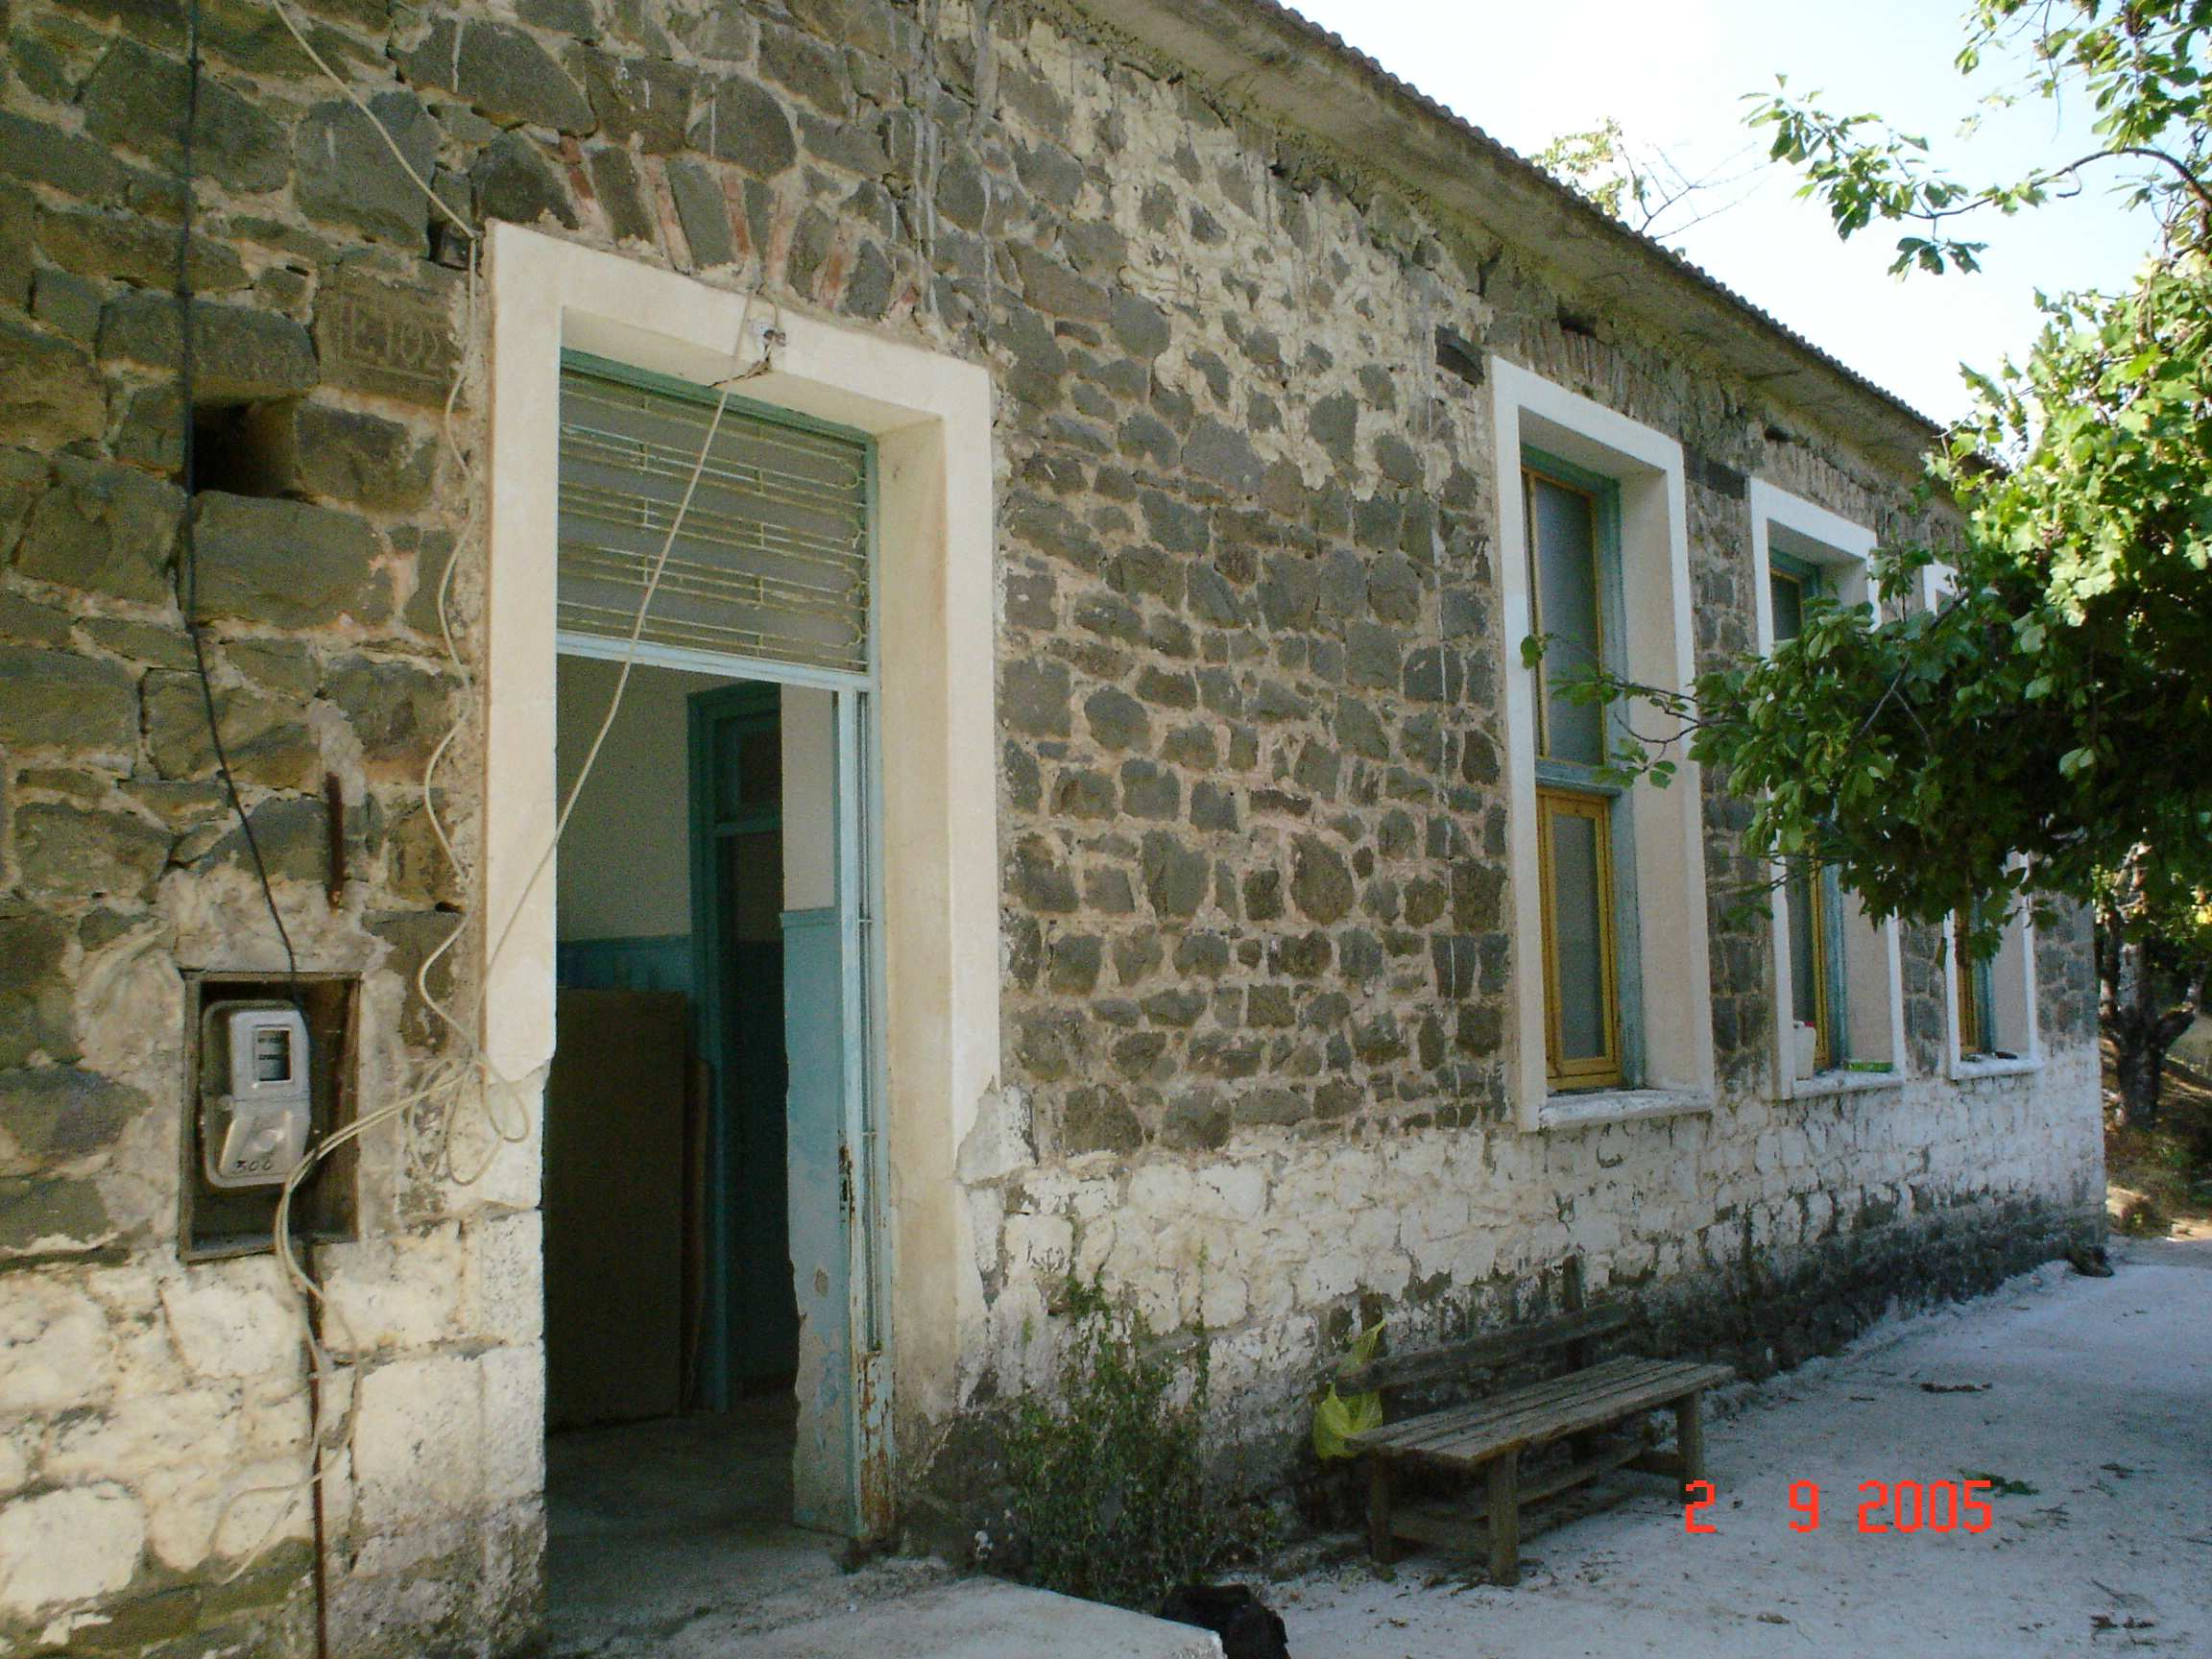 4.16 ΠΙΤΣΙ Πρόκειται επίσης για λιθόκτιστο κτίριο, το οποίο λειτούργησε ως σχολείο του χωριού και πλέον χρησιµοποιείται σαν εκλογικό κέντρο.